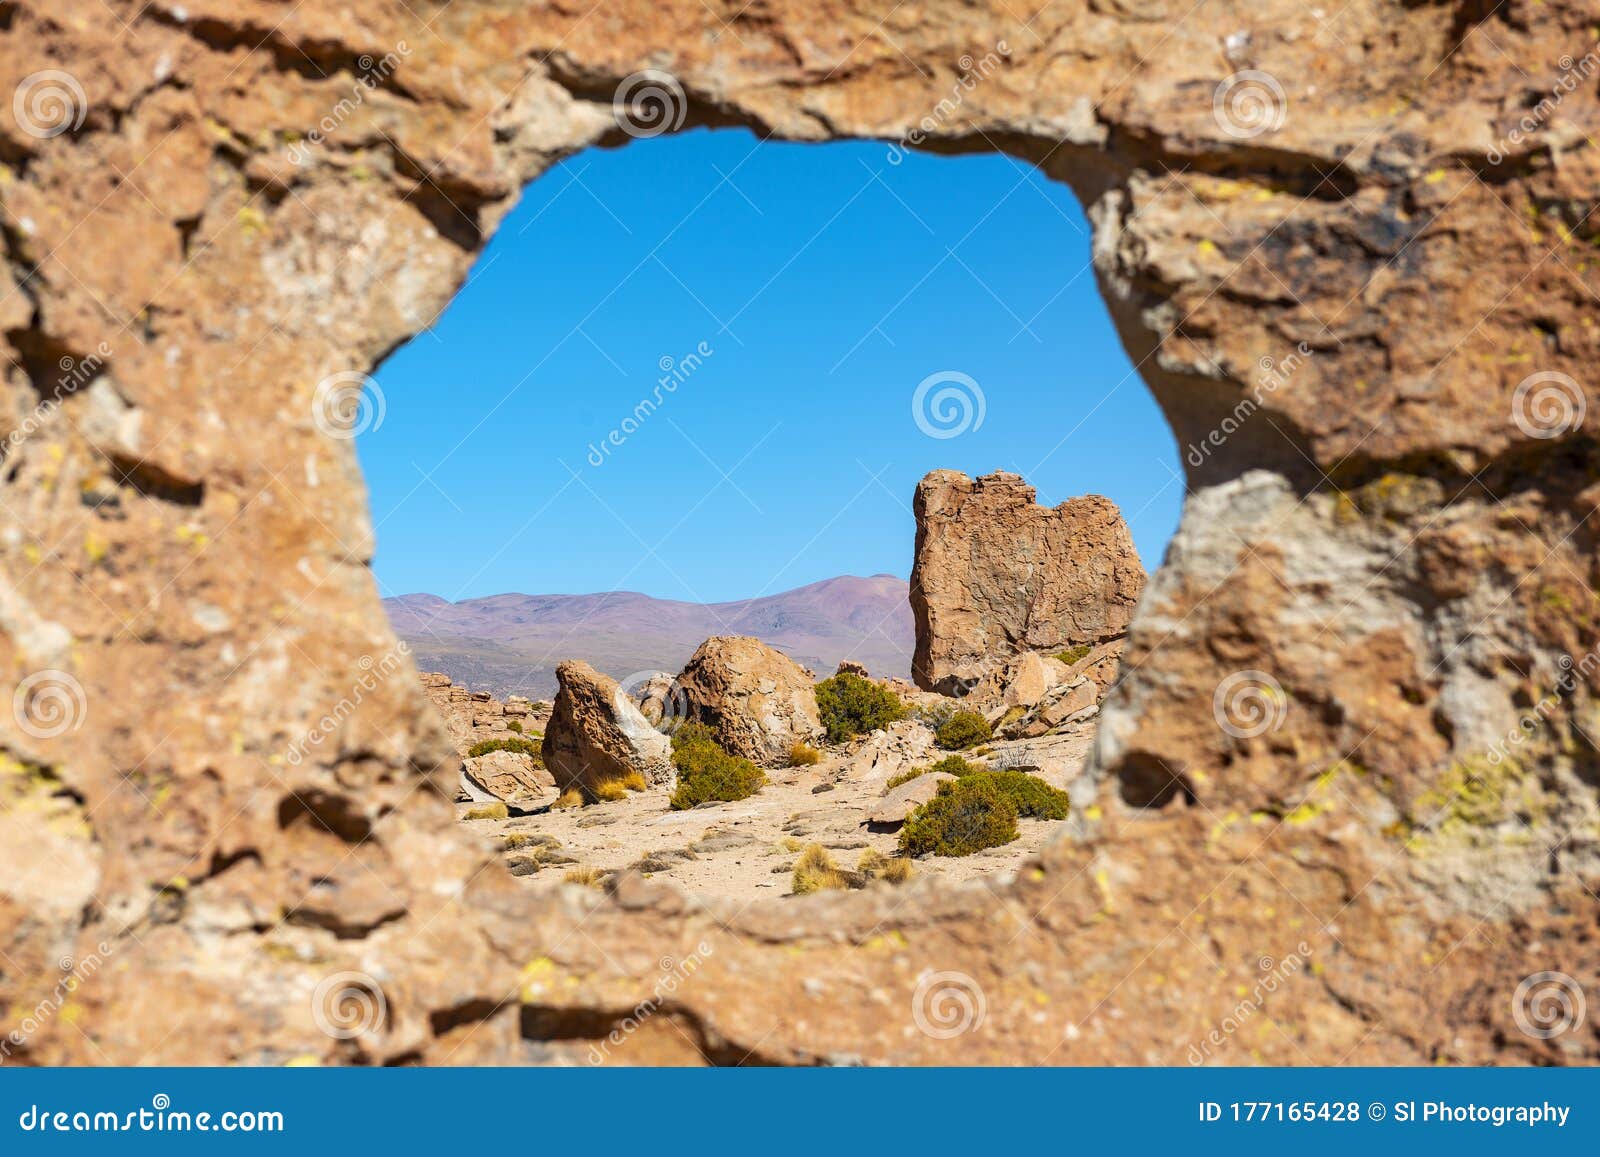 valle de las rocas, uyuni, bolivia